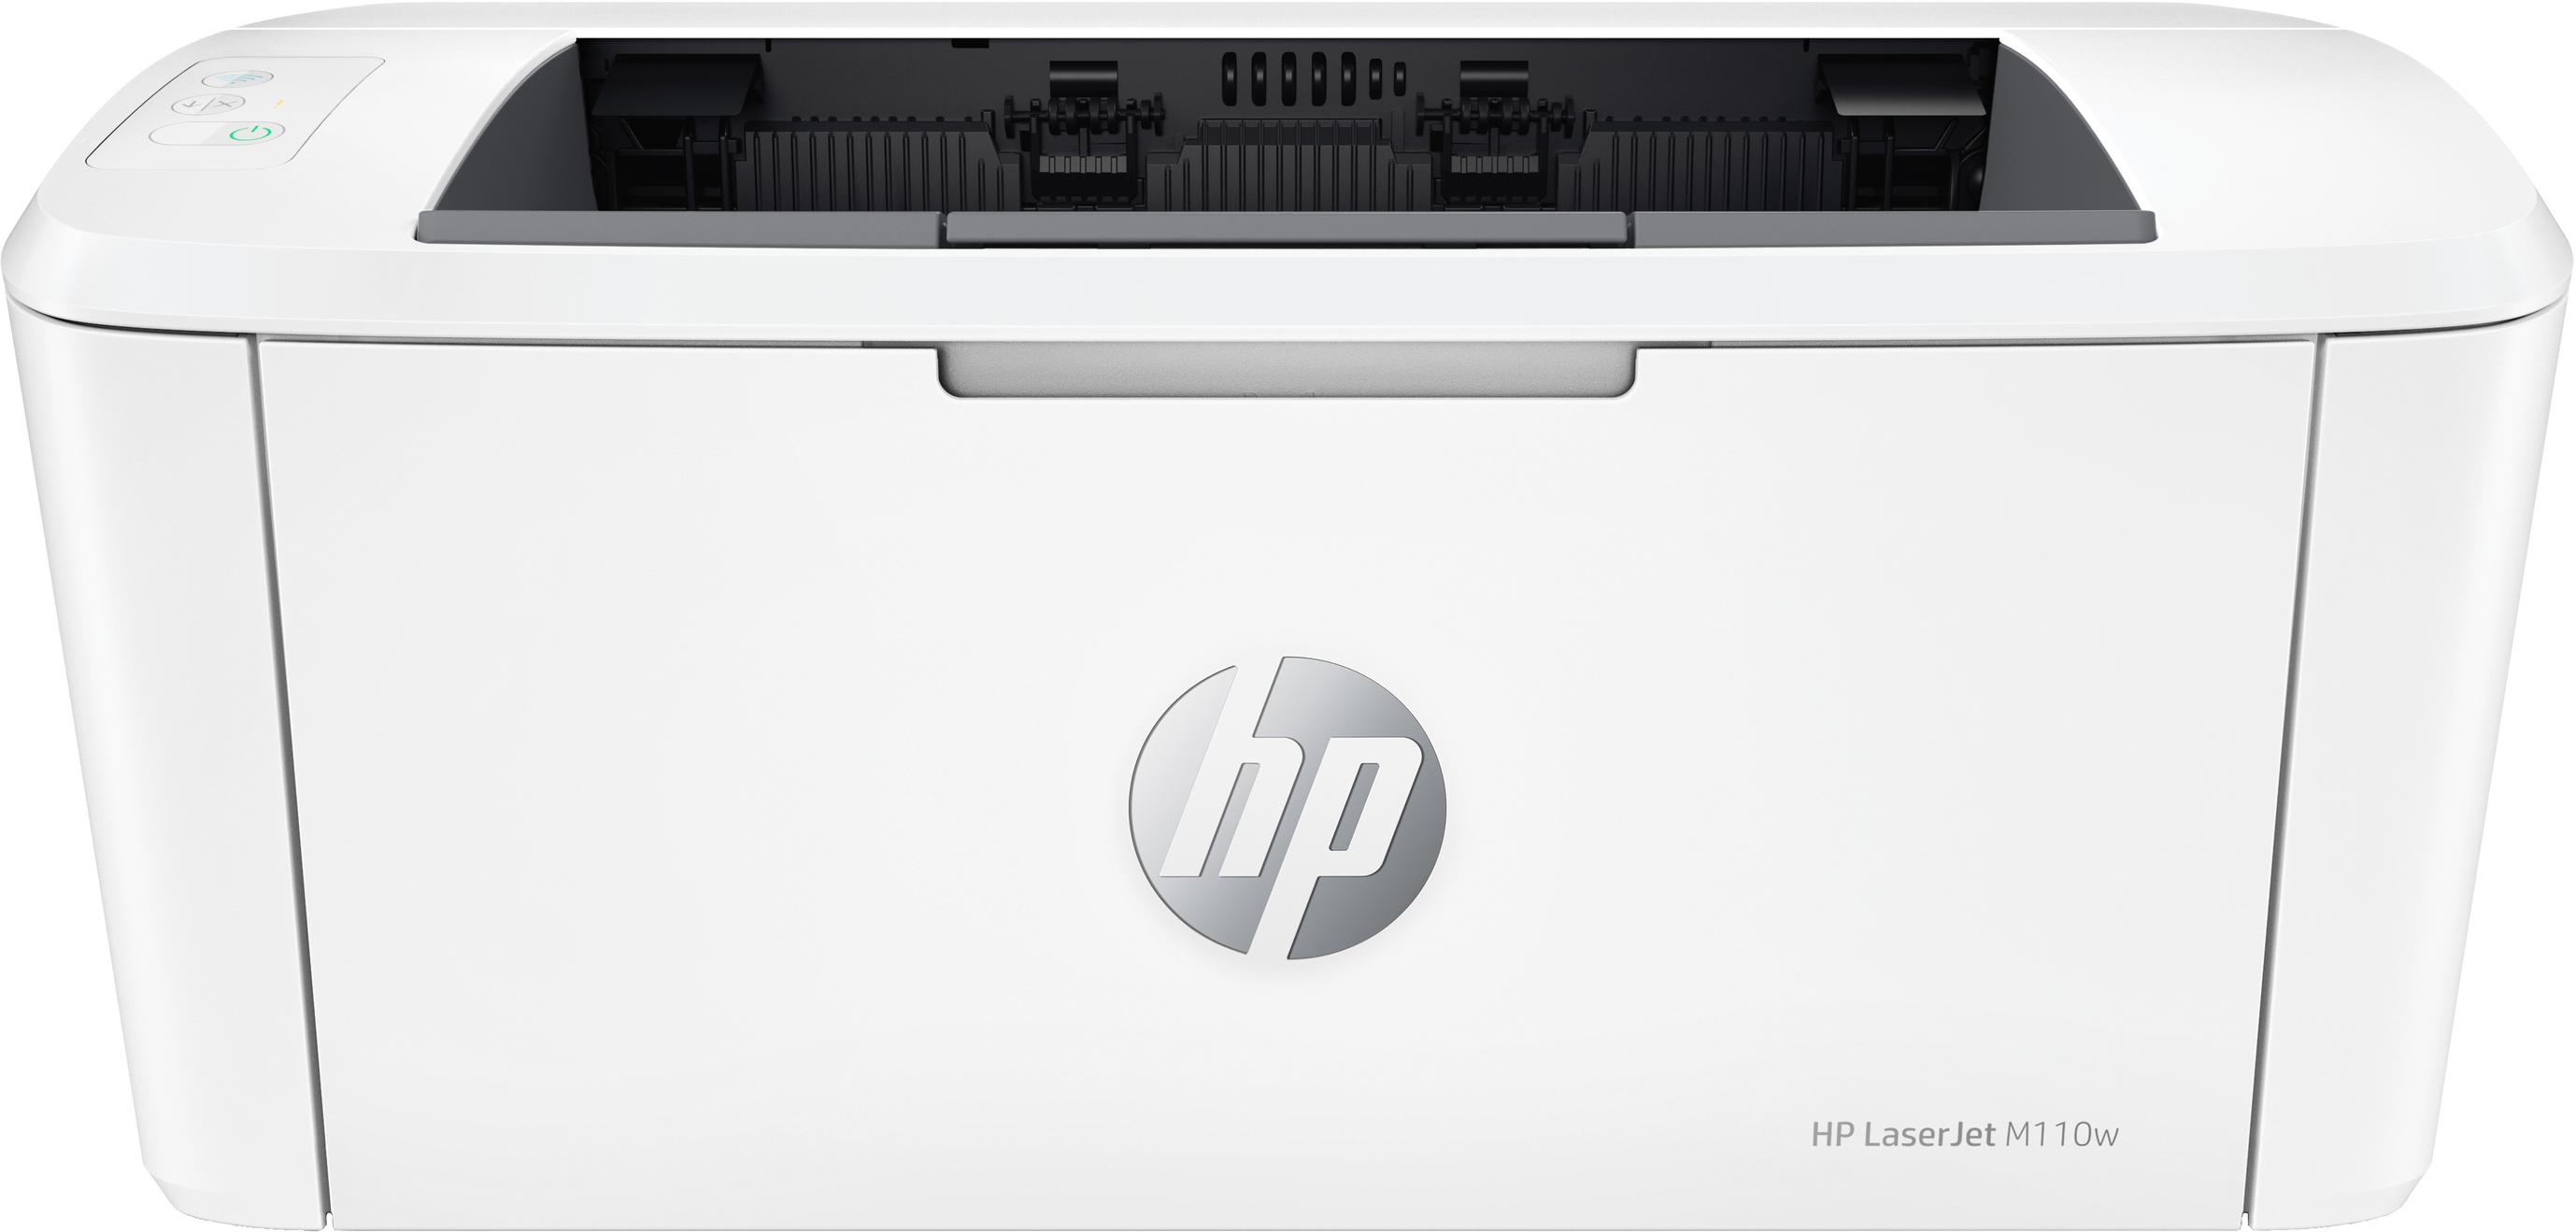 Offerta per HP - LaserJet Stampante M110w, Bianco e nero, Stampante per Piccoli uffici, Stampa, dimensioni compatte a 99,99€ in Unieuro